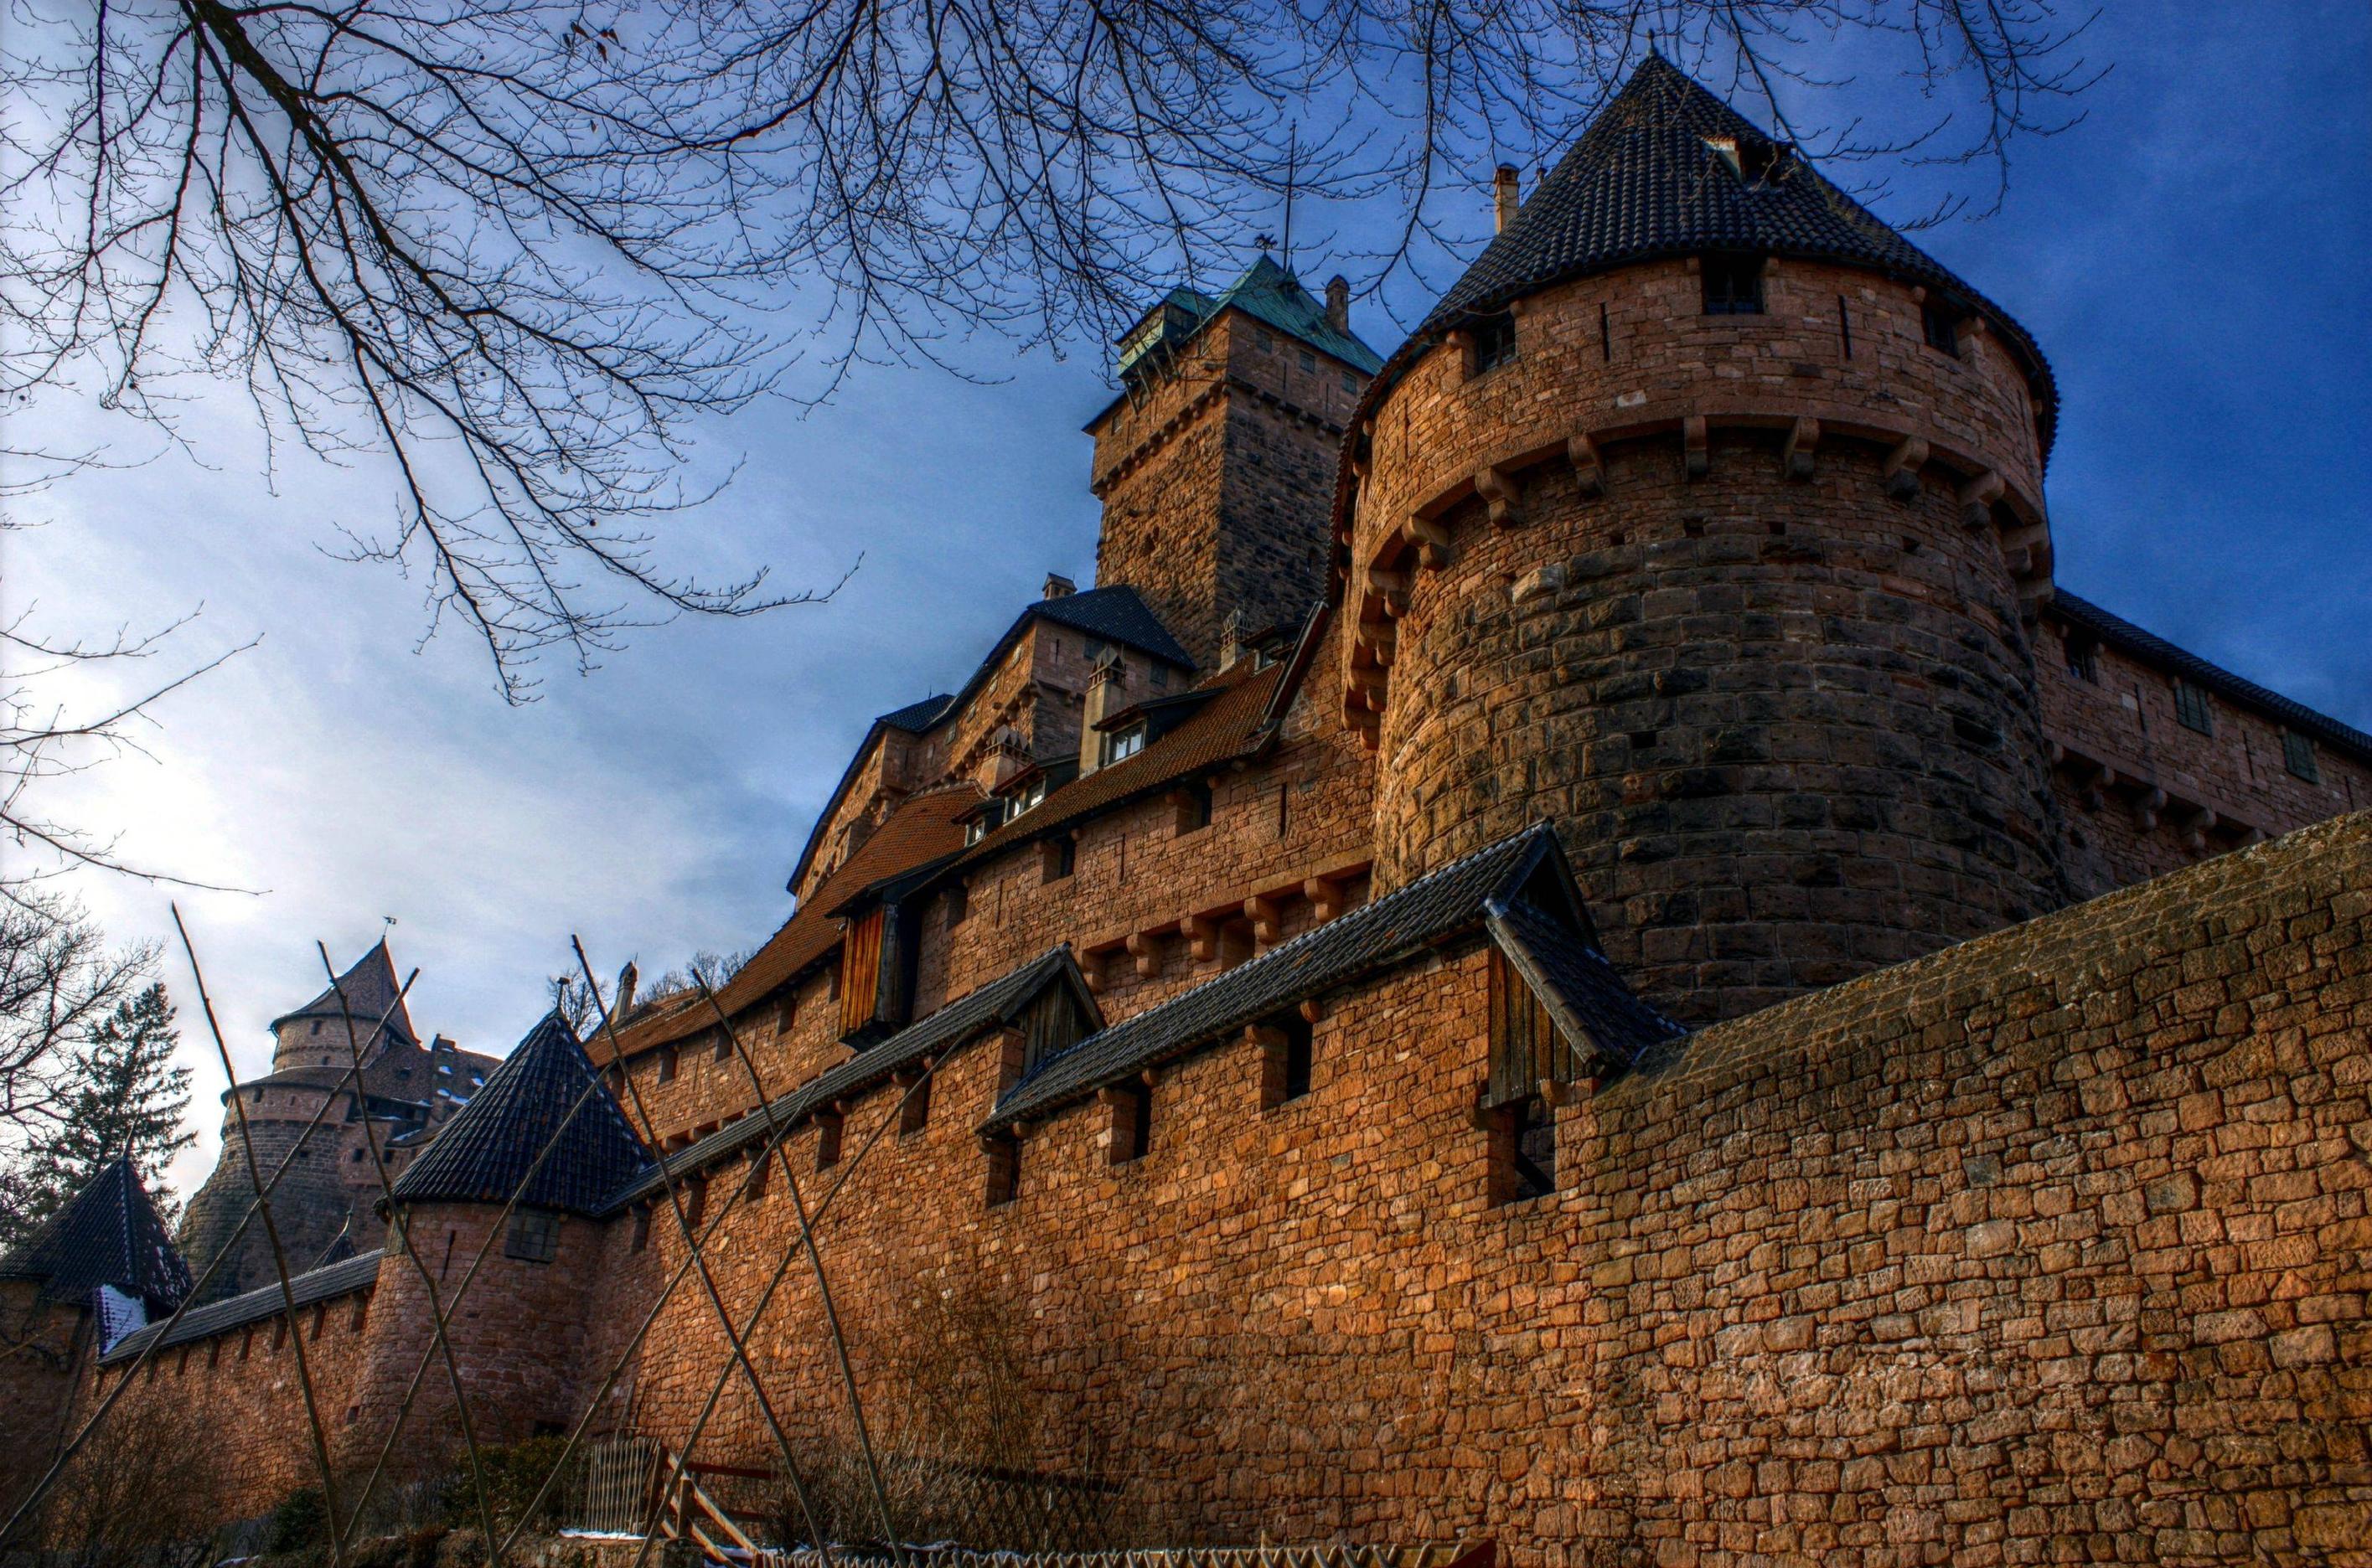 Скачать обои Замок Верхний Кенигсбург на телефон бесплатно